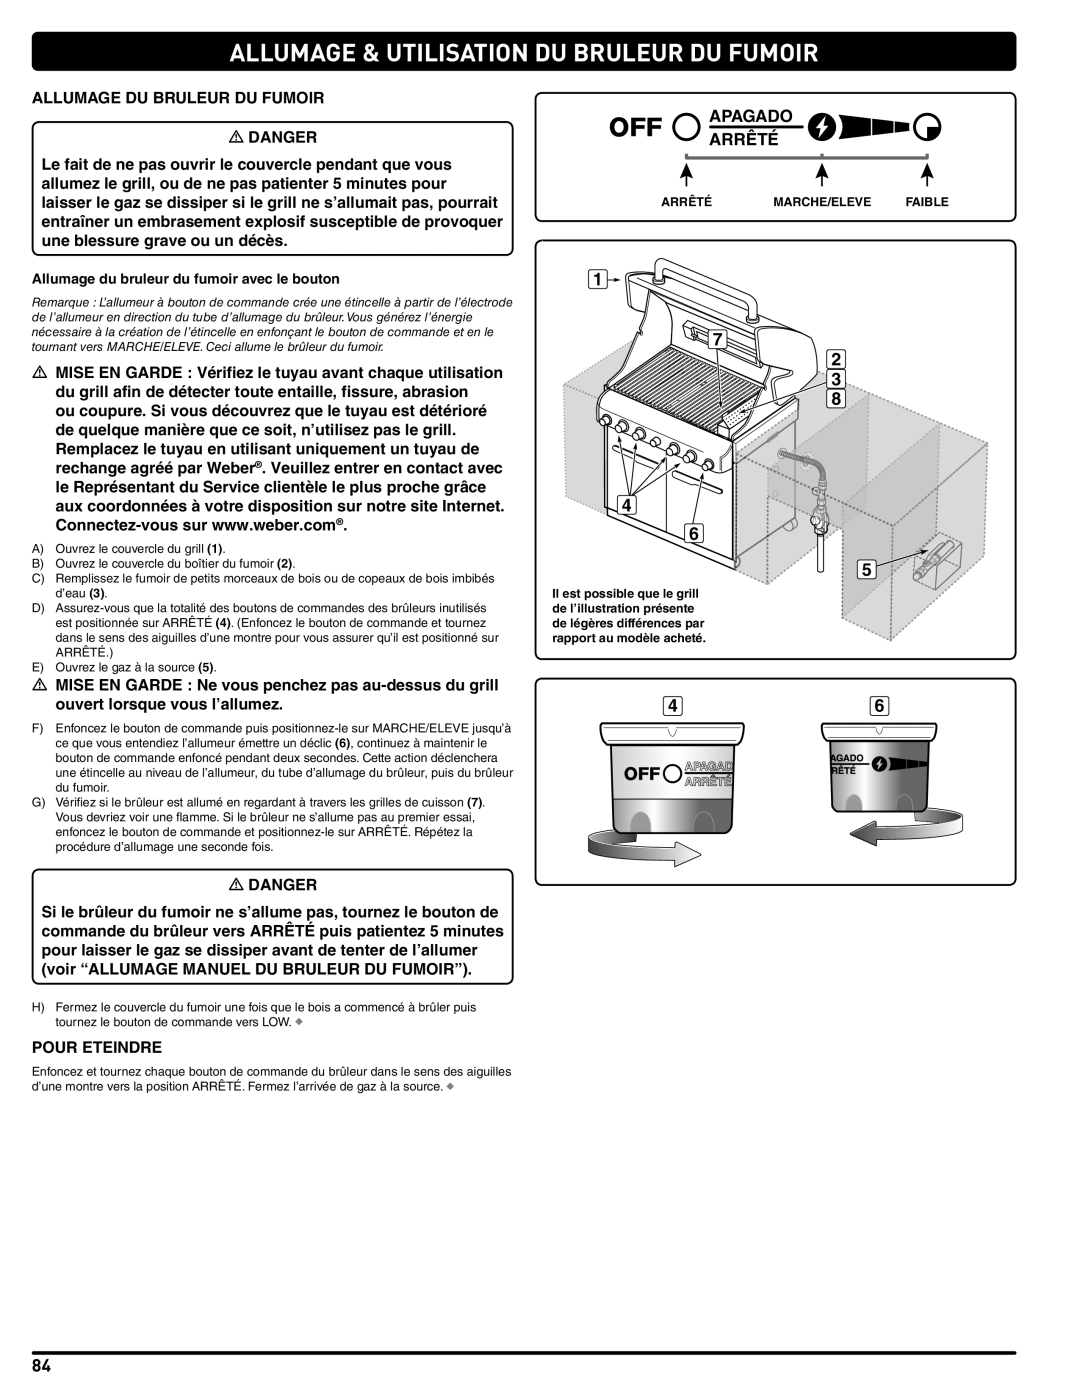 Weber Summit Gas Grill, 56576 manual Allumage & Utilisation Du Bruleur Du Fumoir, Apagado Arrêté, Marche/Eleve, Faible 